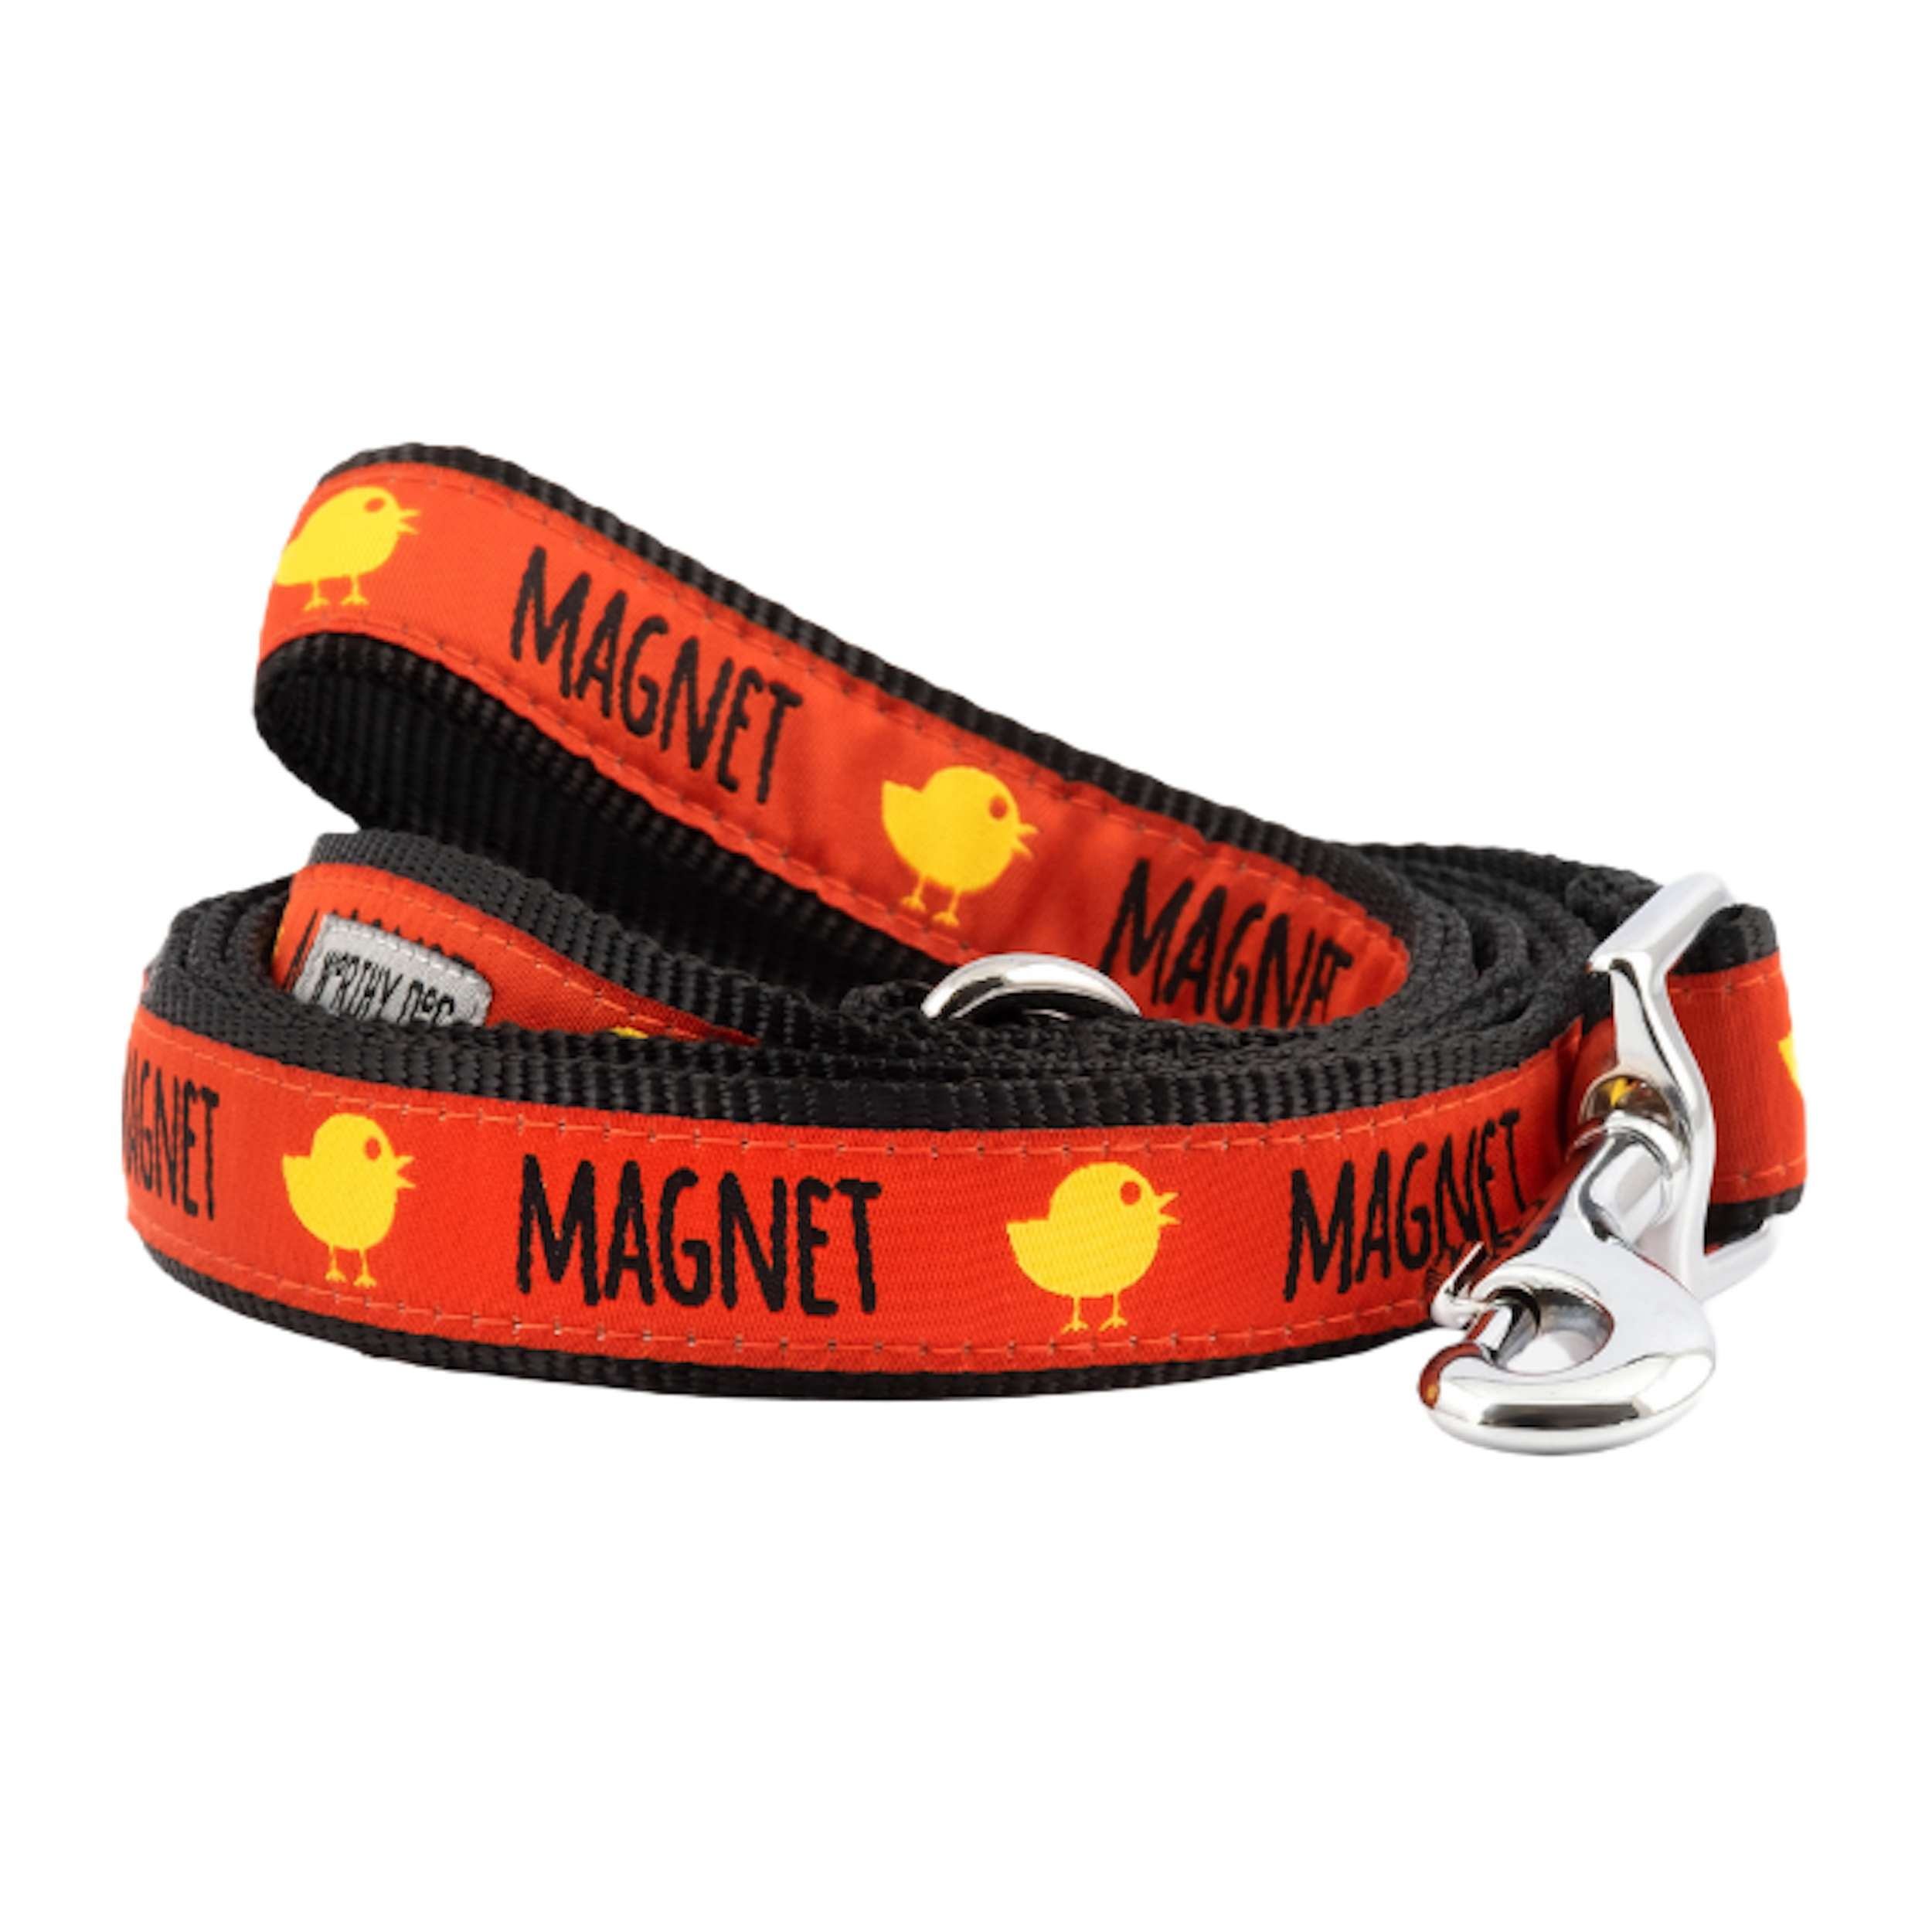 chick-magnet-dog-leash